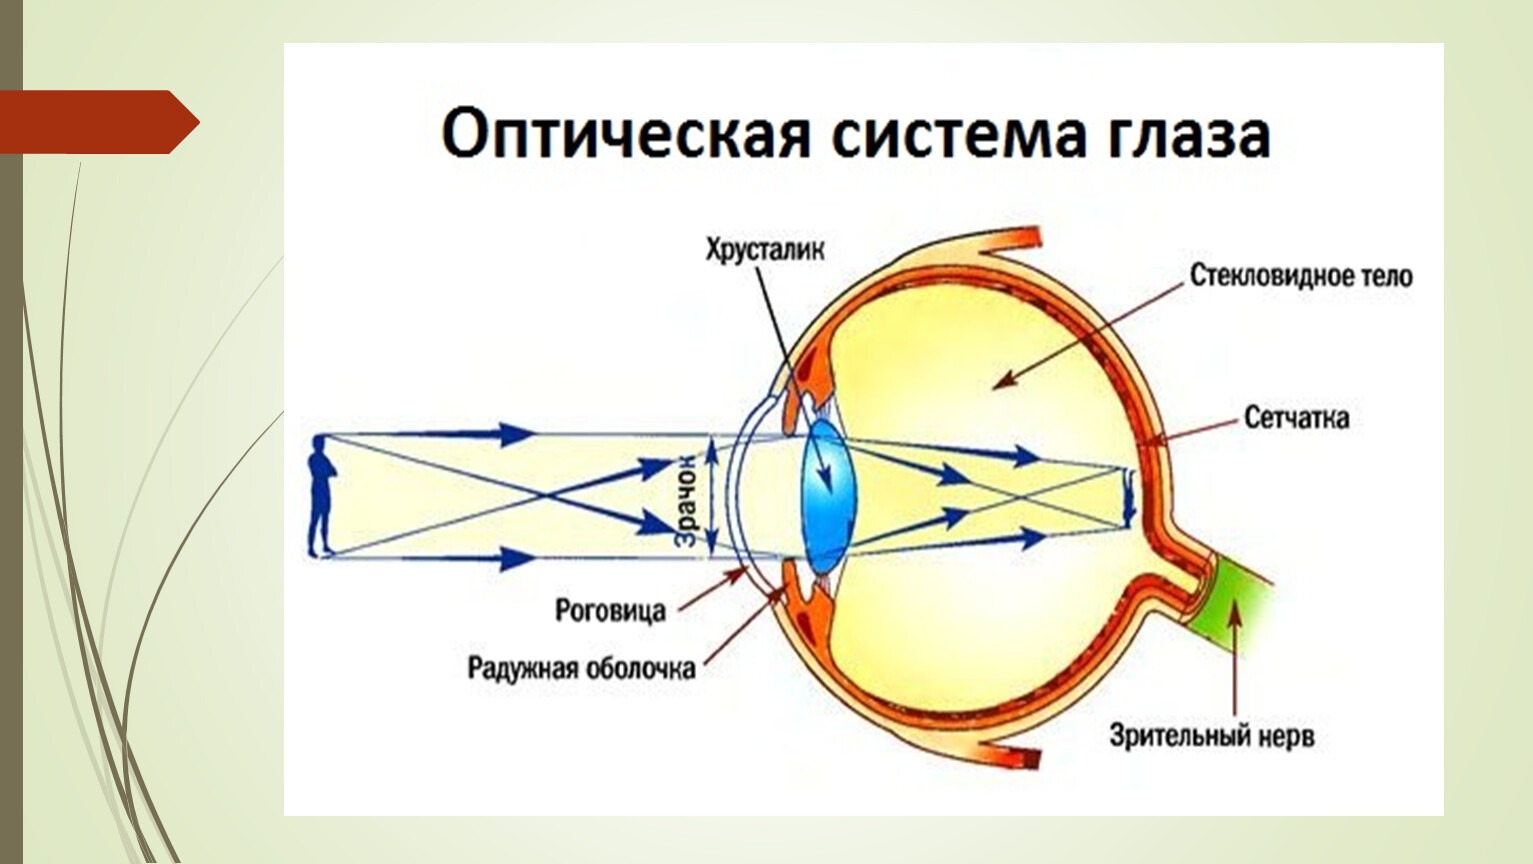 Тема урока глаз. Оптическая система глаза.